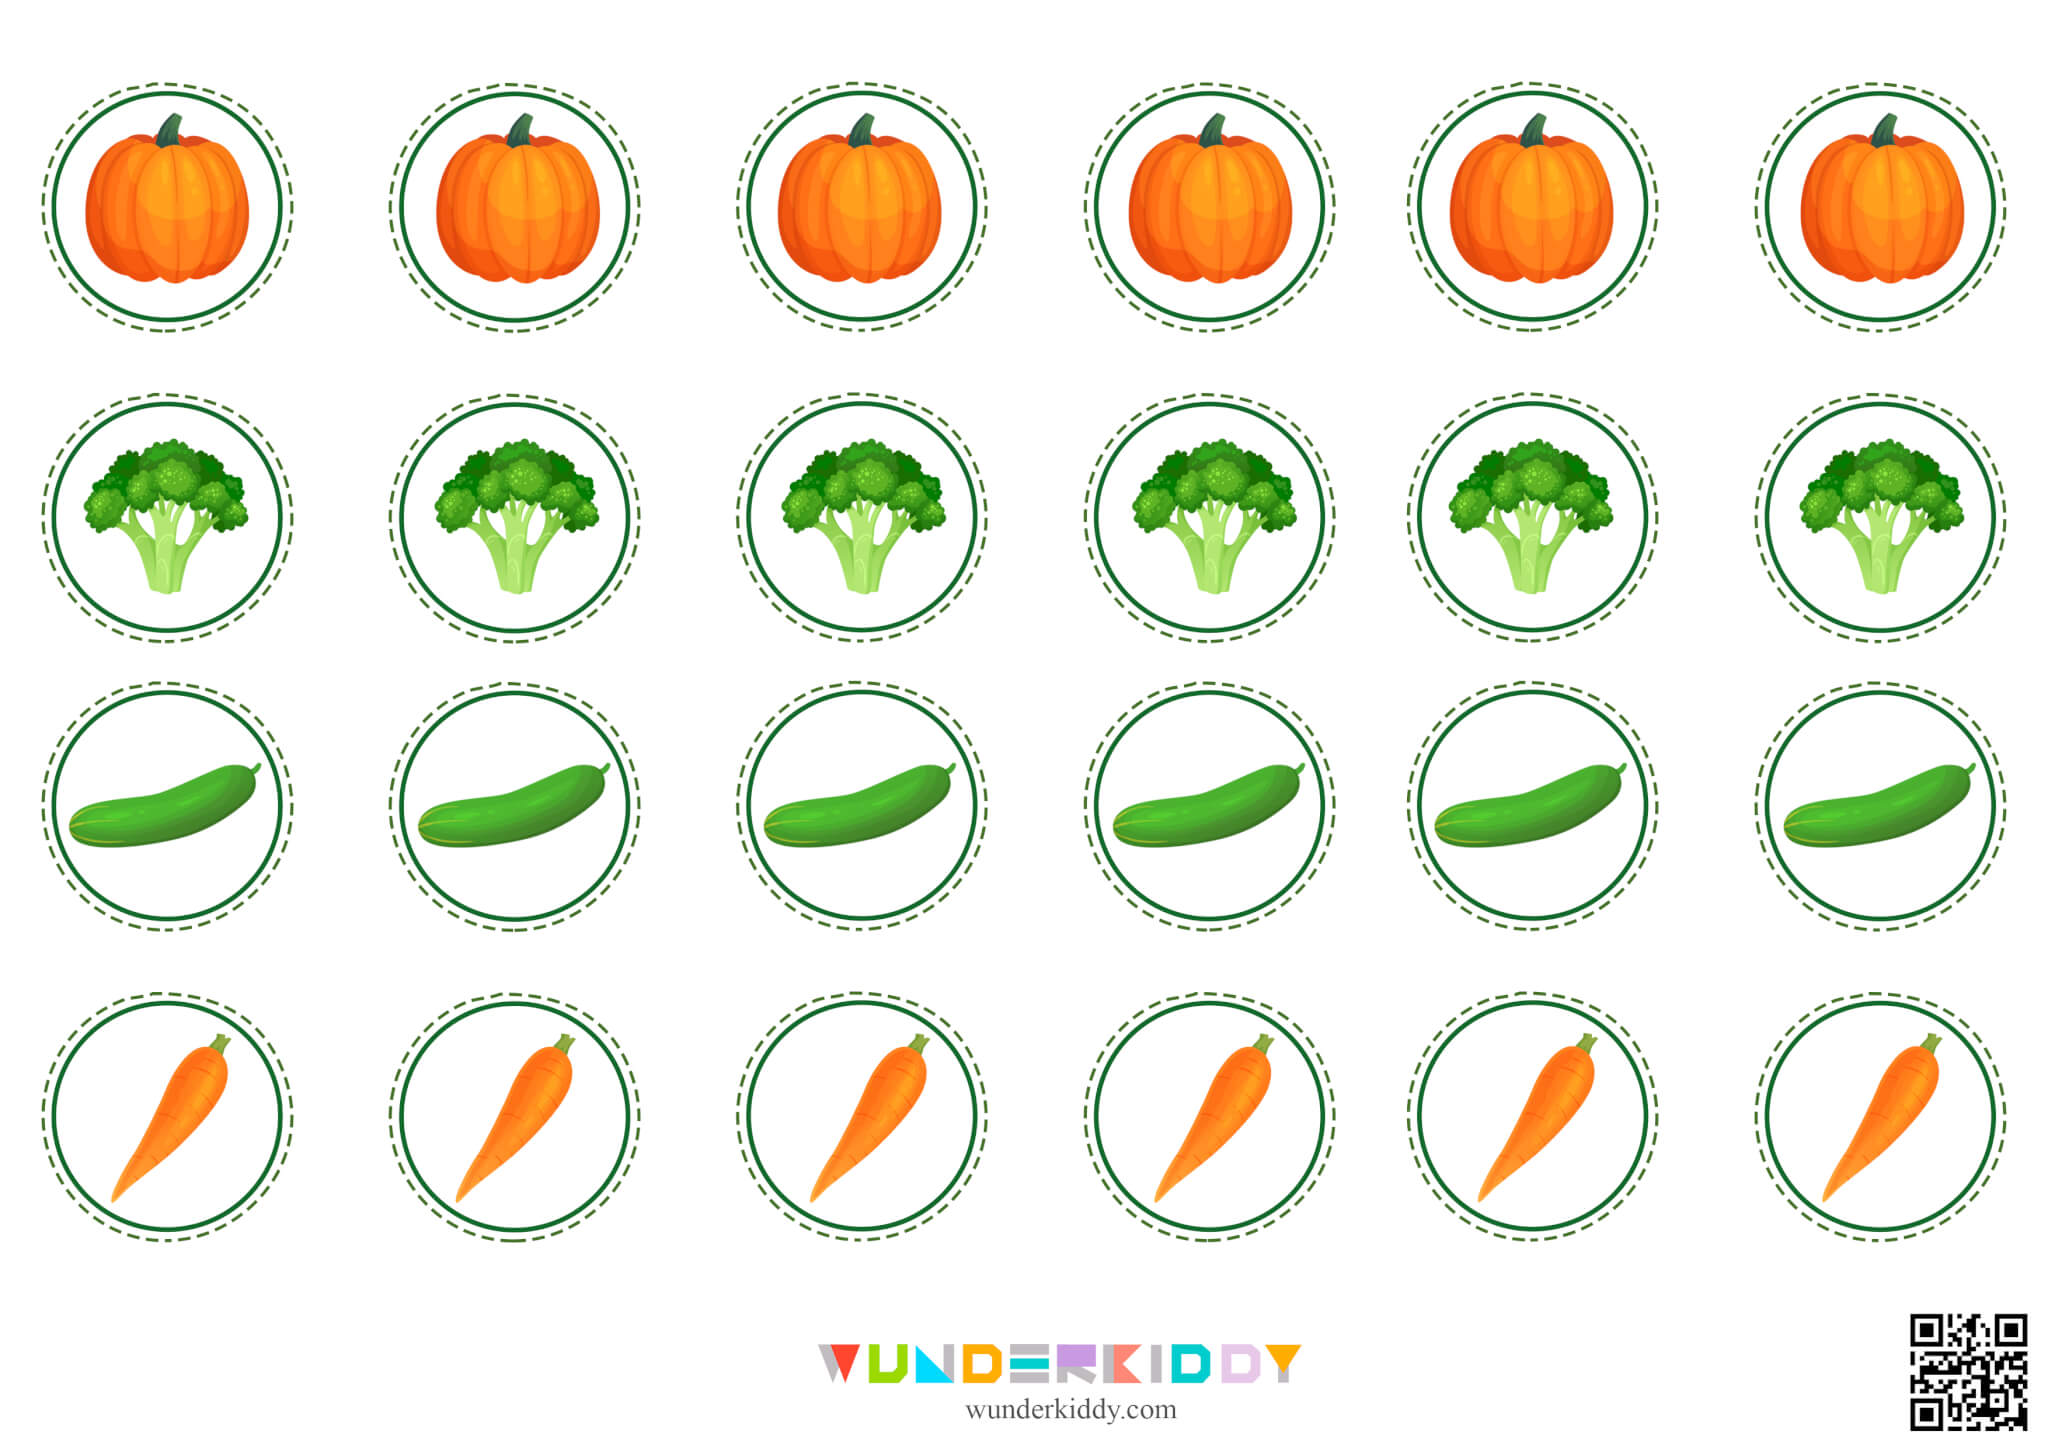 Math Dice Game for Kids Basket of Vegetables - Image 6